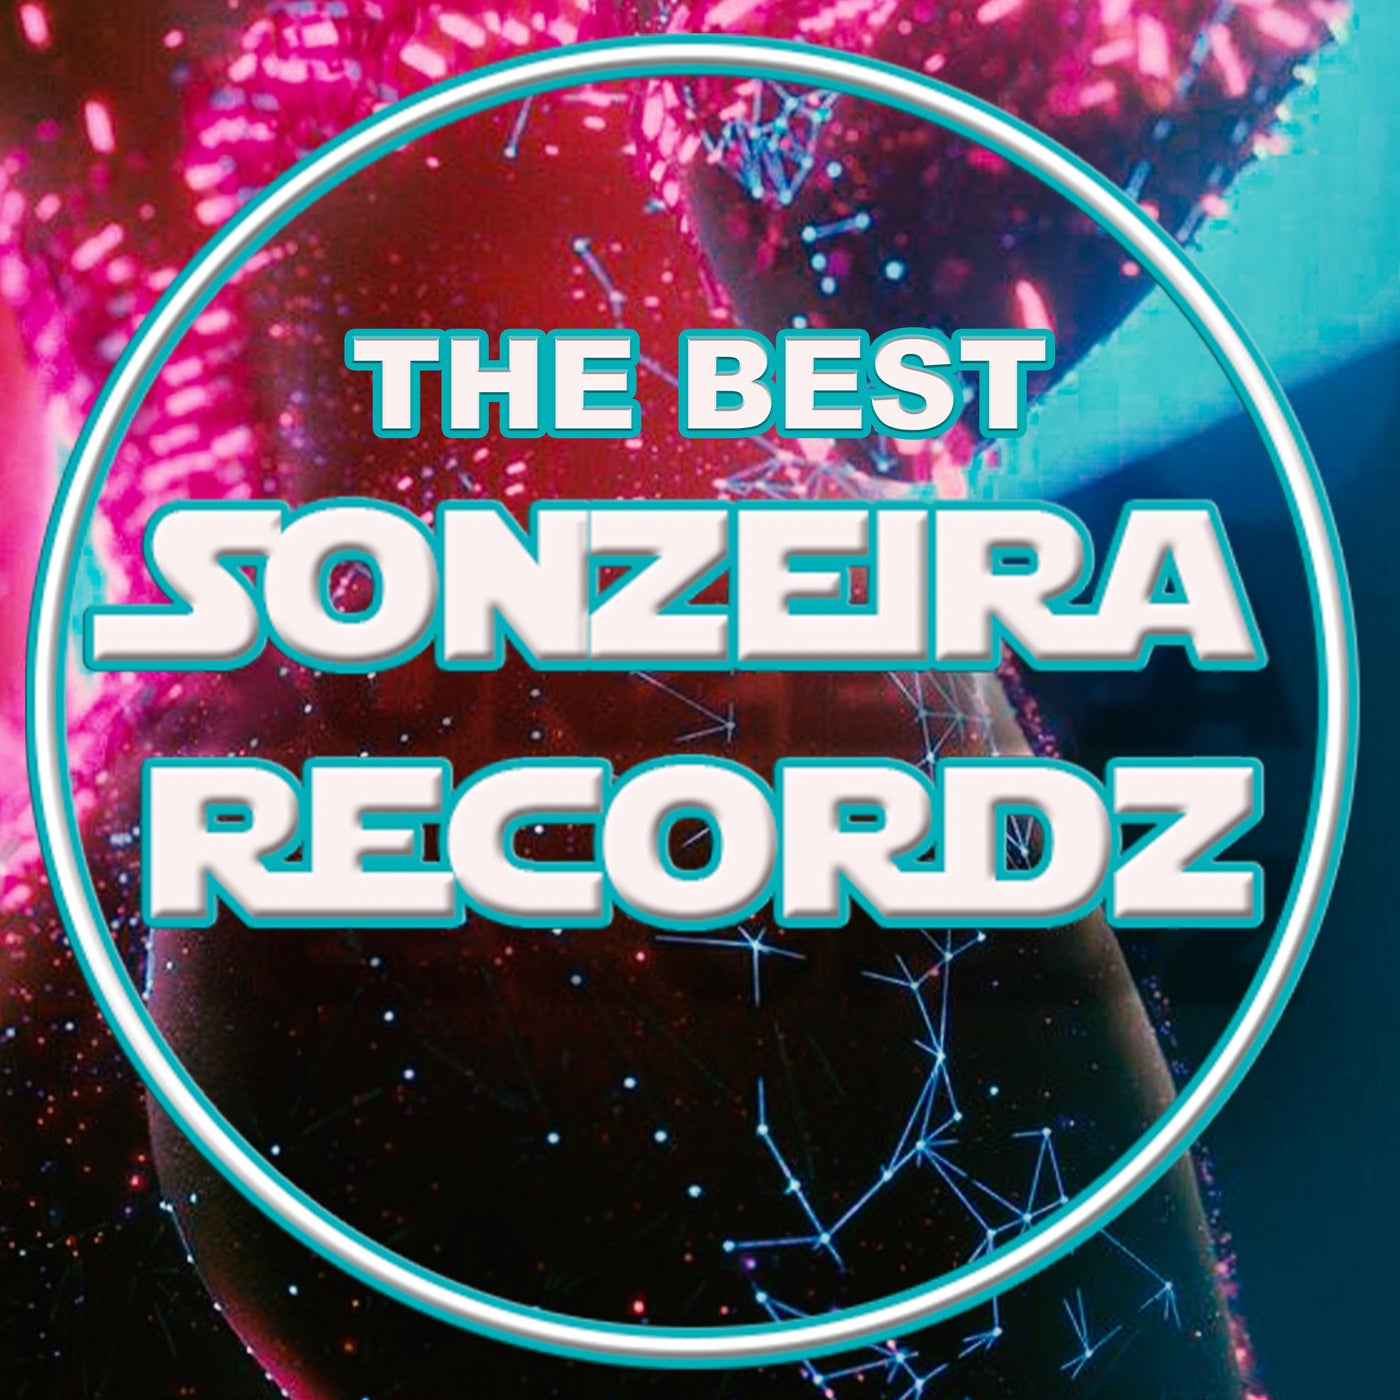 The Best Sonzeira Recordz